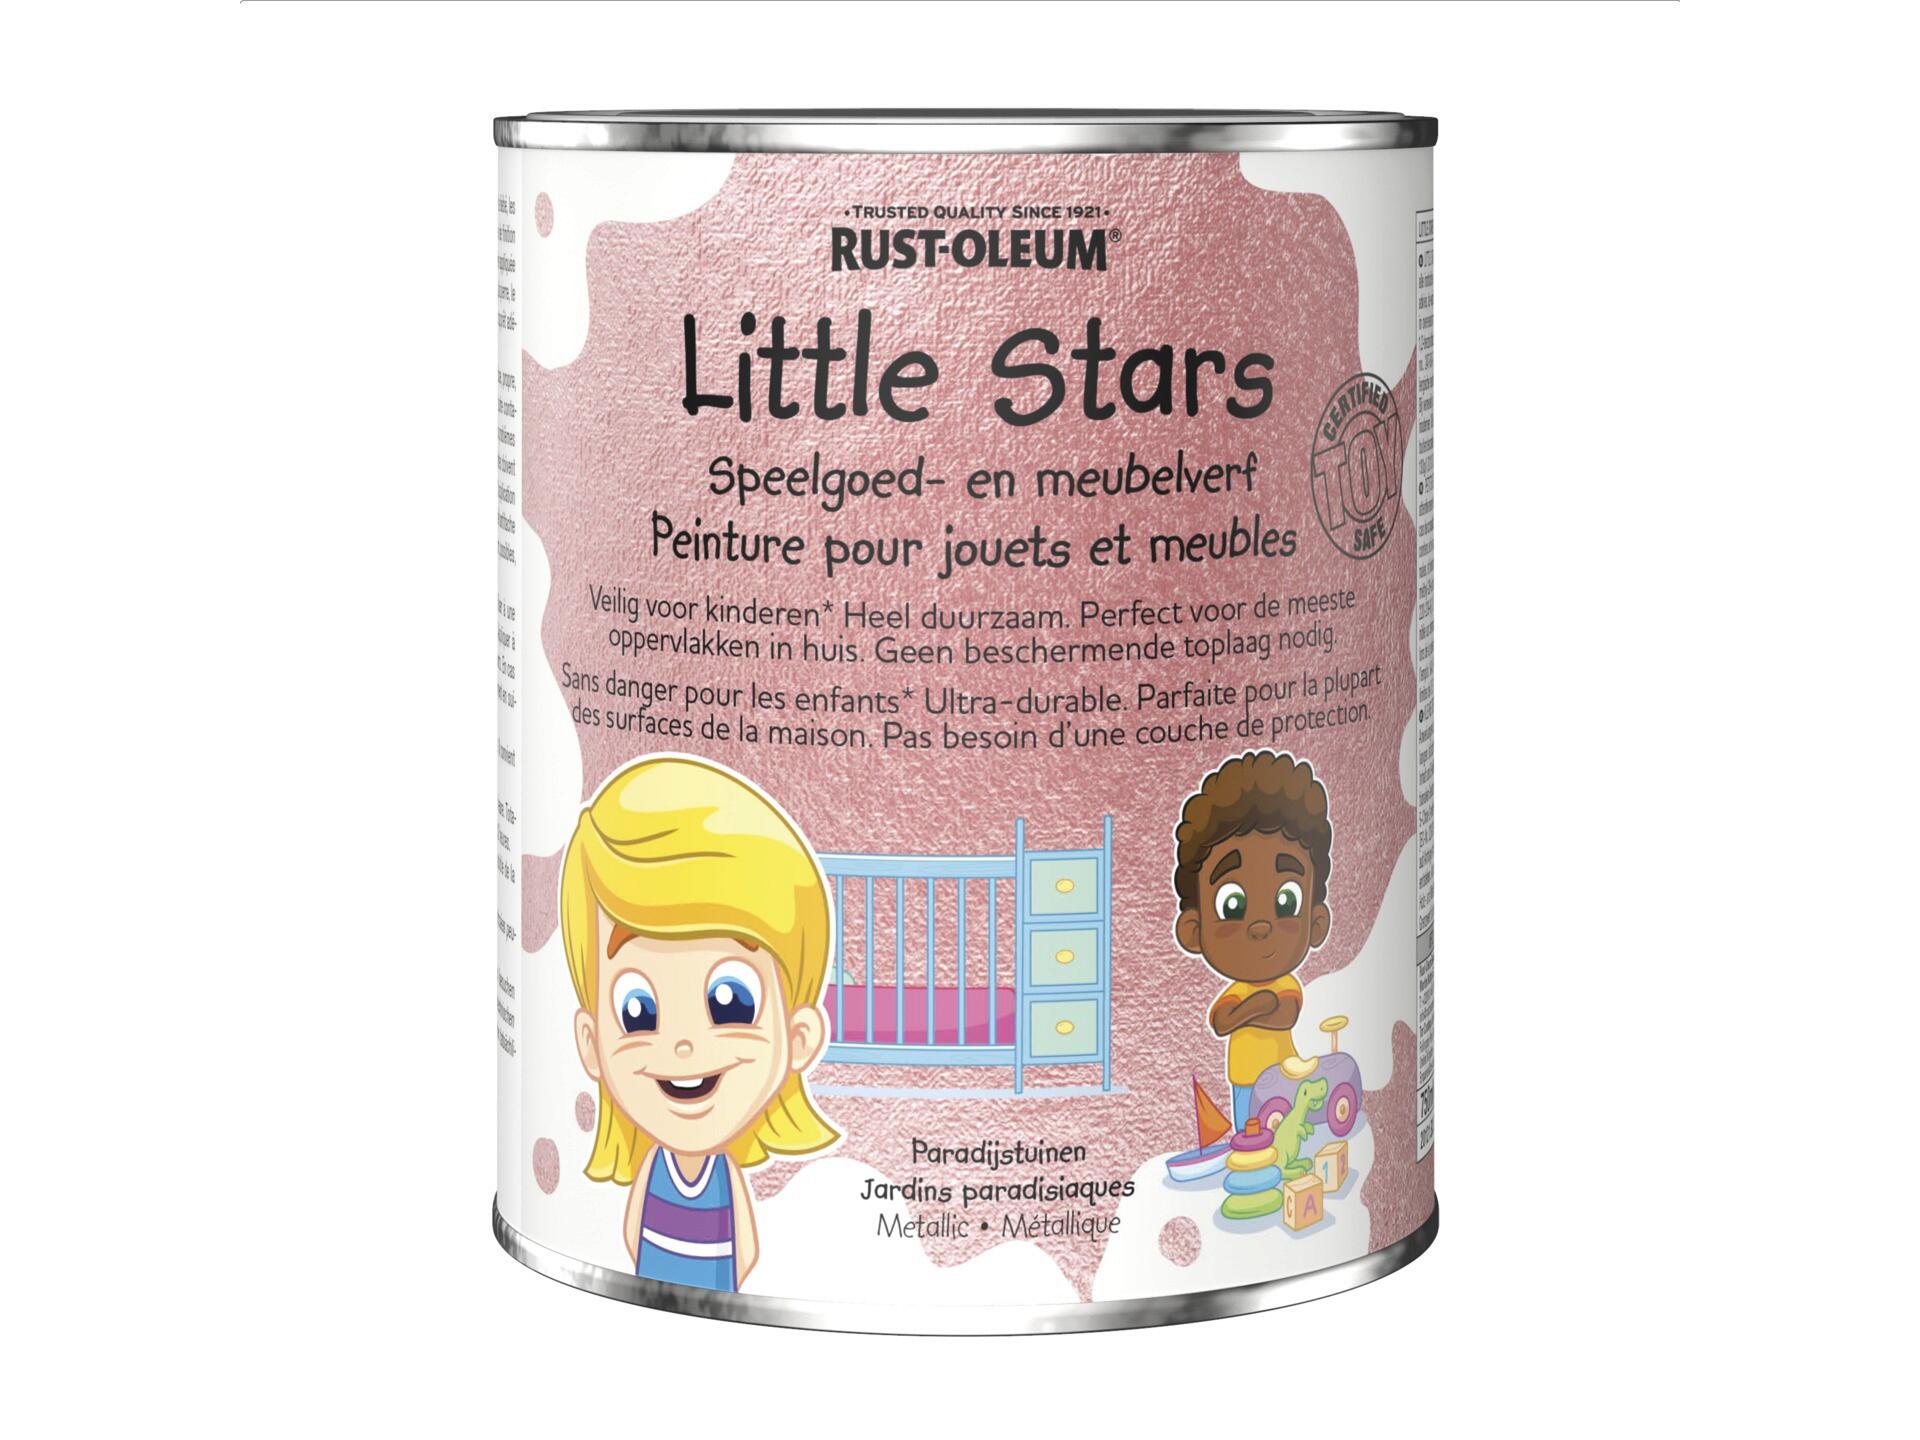 Rust-oleum Little Stars peinture pour meubles et jouets 750ml jardins paradisiaques